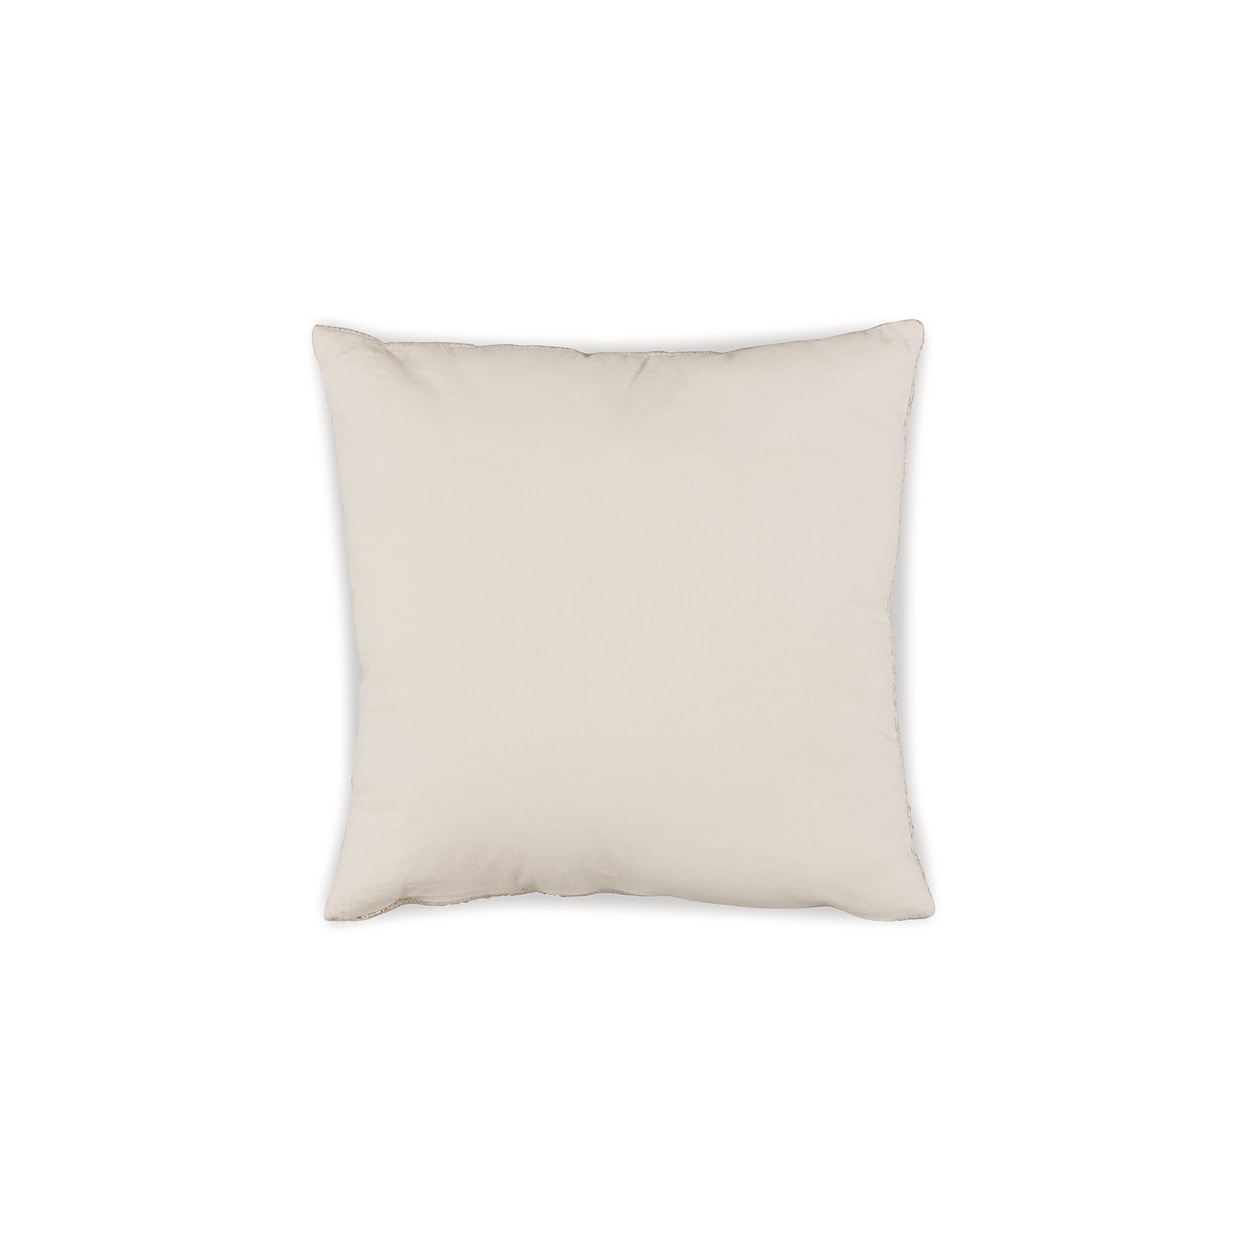 Signature Design Budrey Pillow (Set of 4)